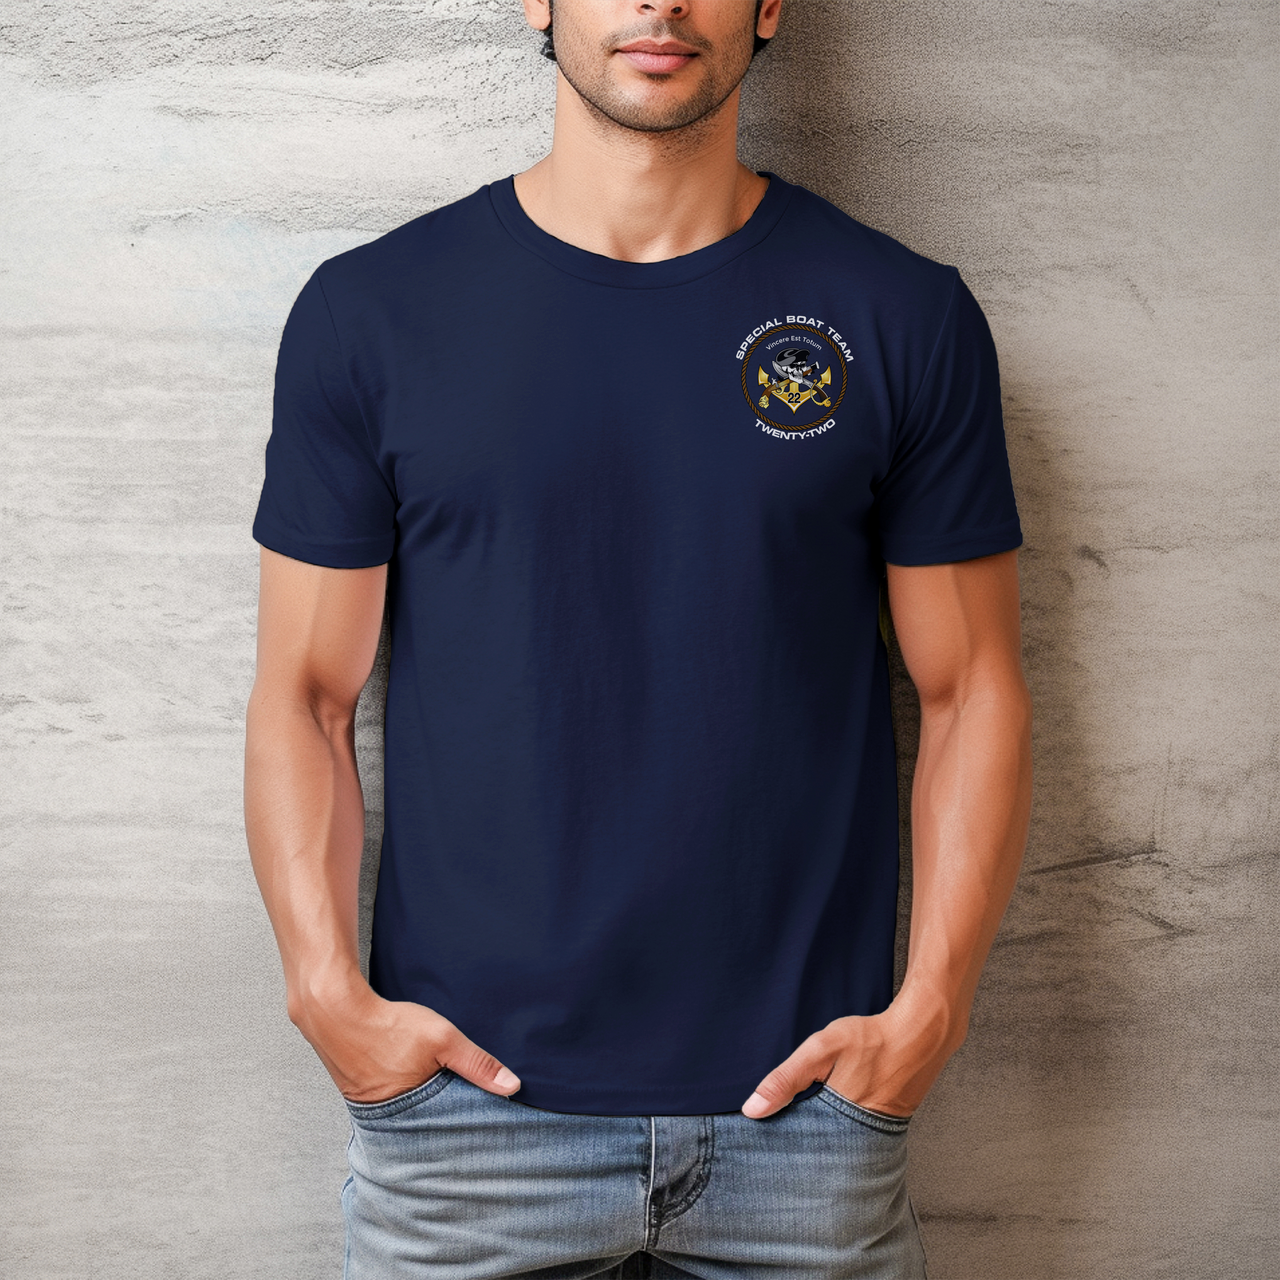 Special Boat Team 22 v1 - SBT22 T-Shirt (Color)